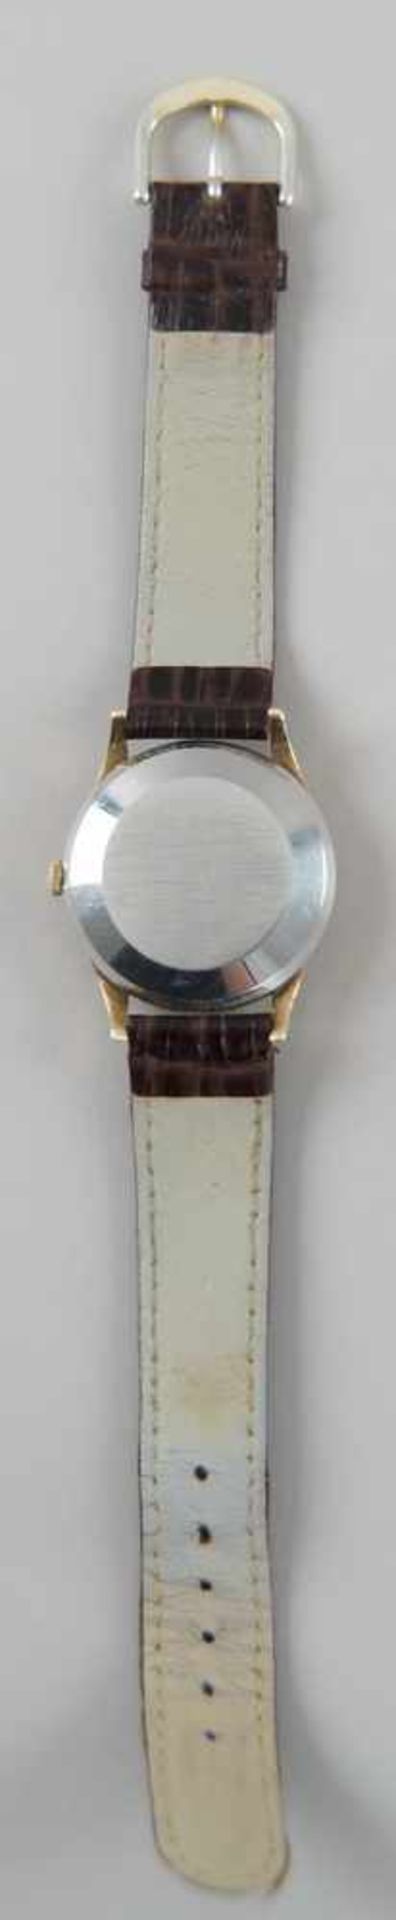 IWC Schaffhausen Automatic Uhr mit Lederarmband, Gebrauchsspuren, L 24 cm - Bild 5 aus 7